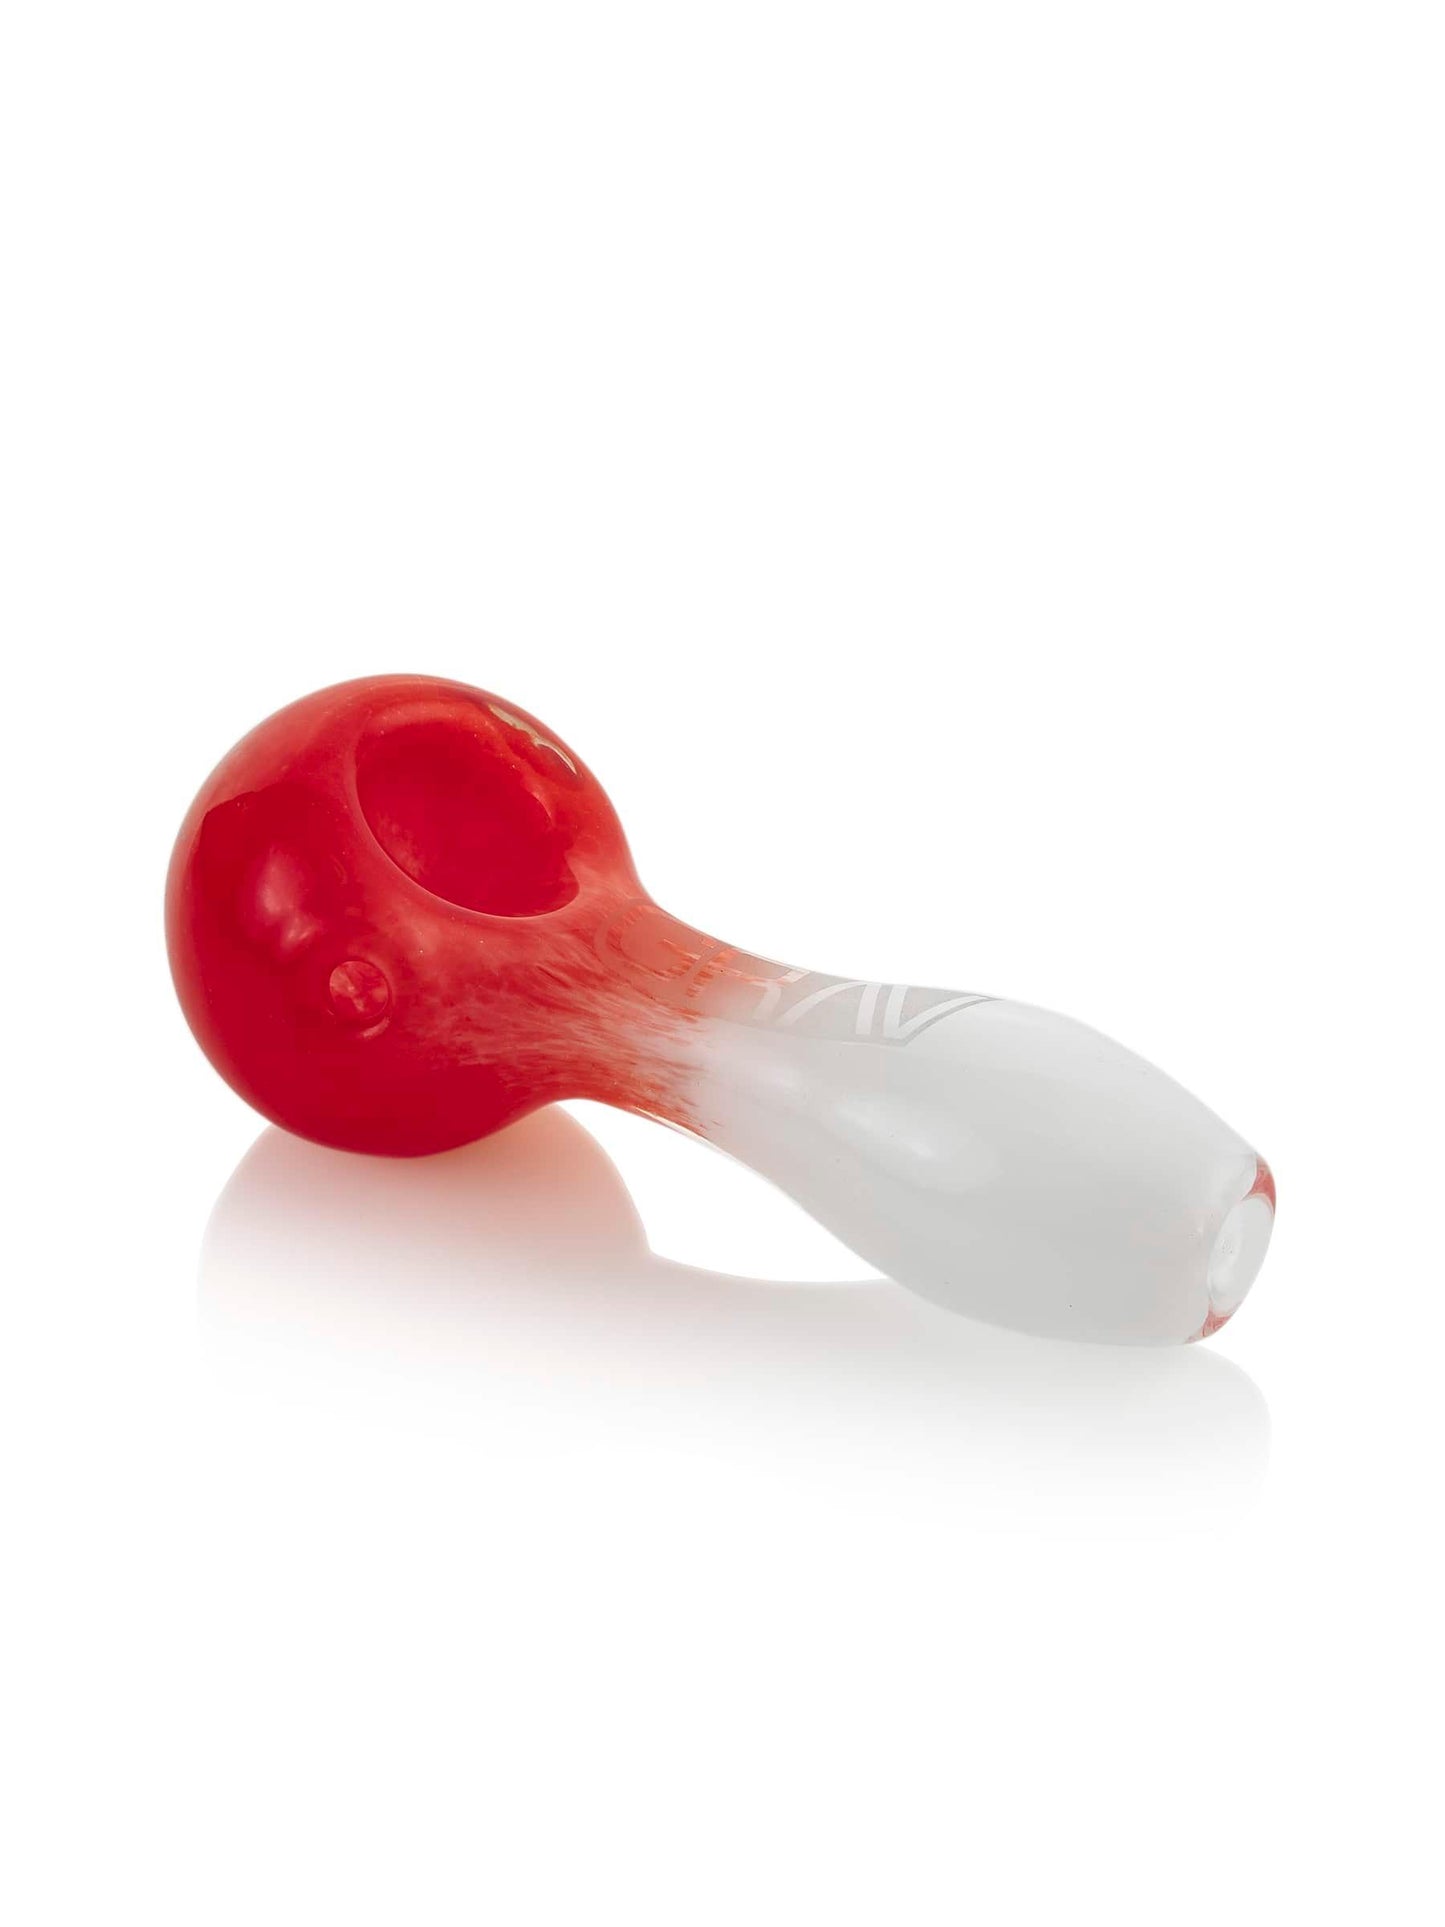 GRAV Hand Pipe Cherry Red GRAV® Frit Spoon